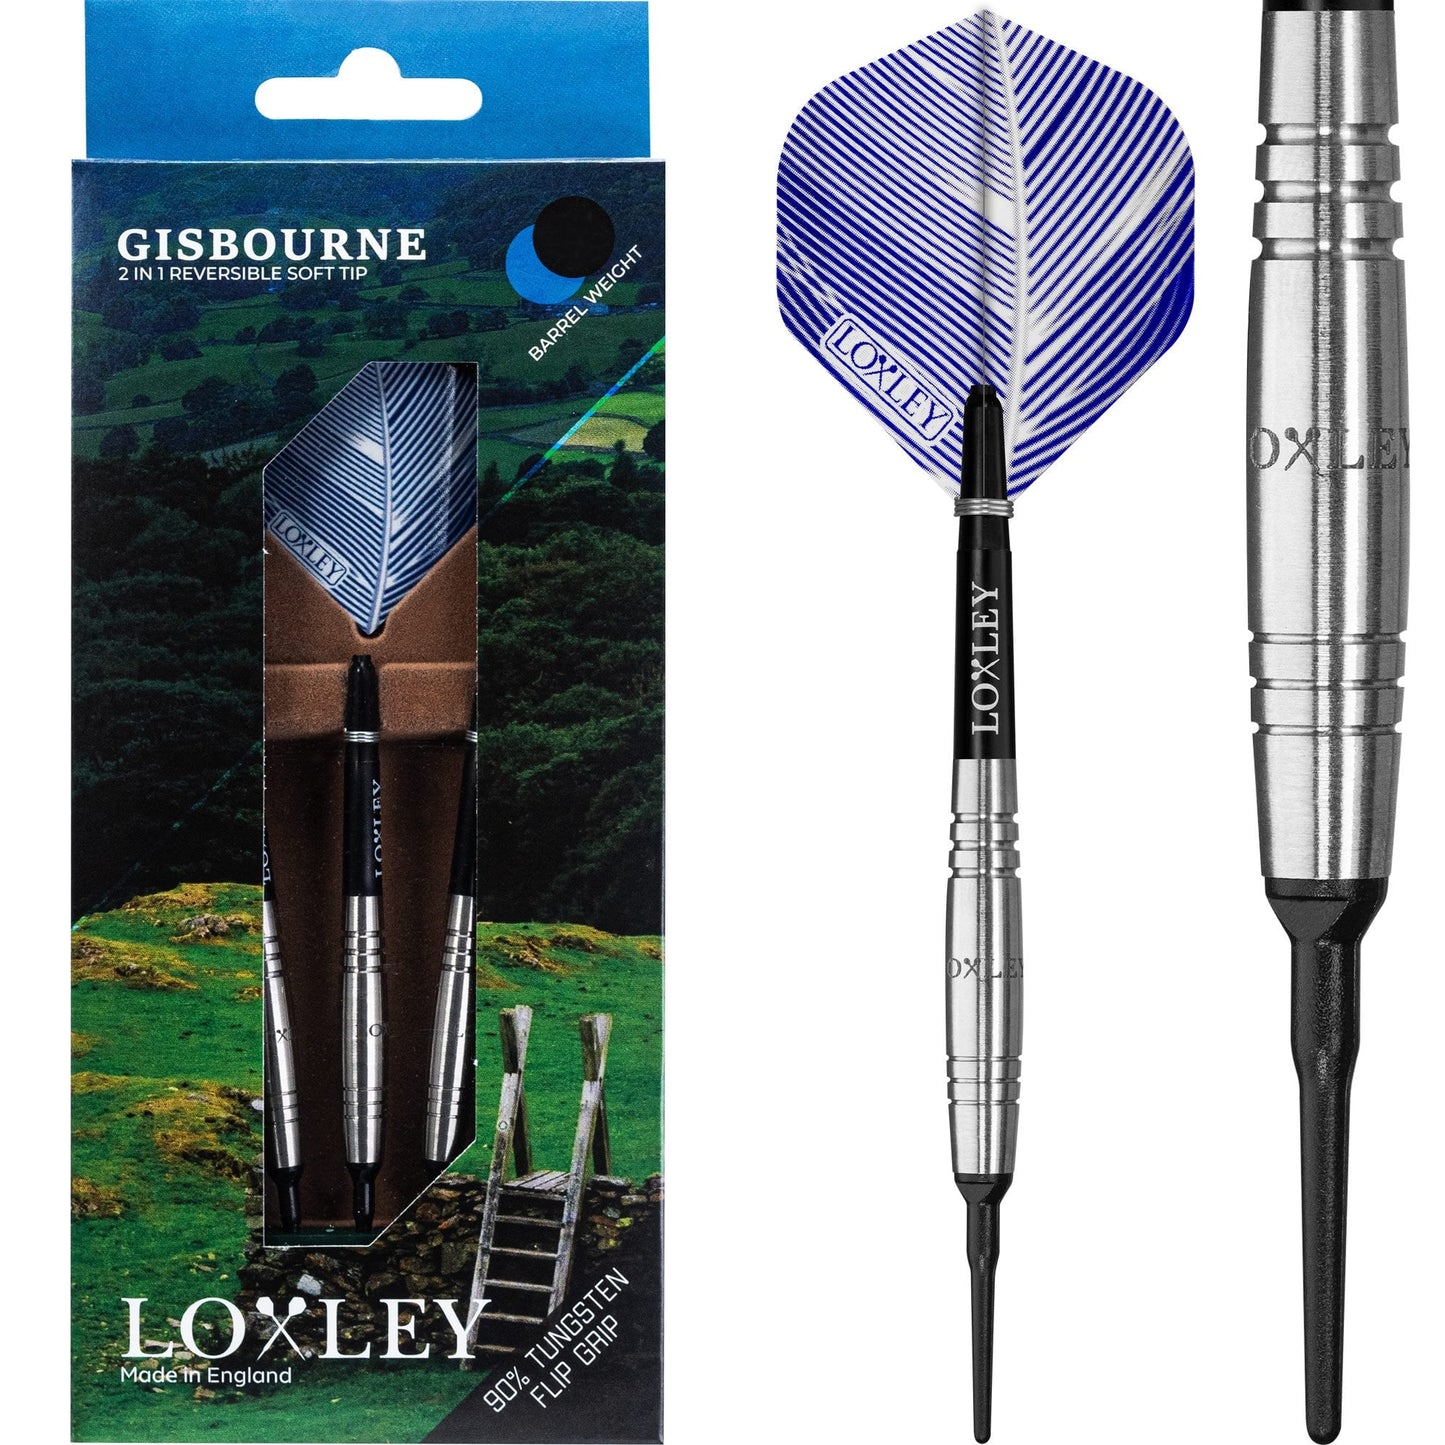 Loxley Gisbourne Darts - Soft Tip - Flip Grip - Natural